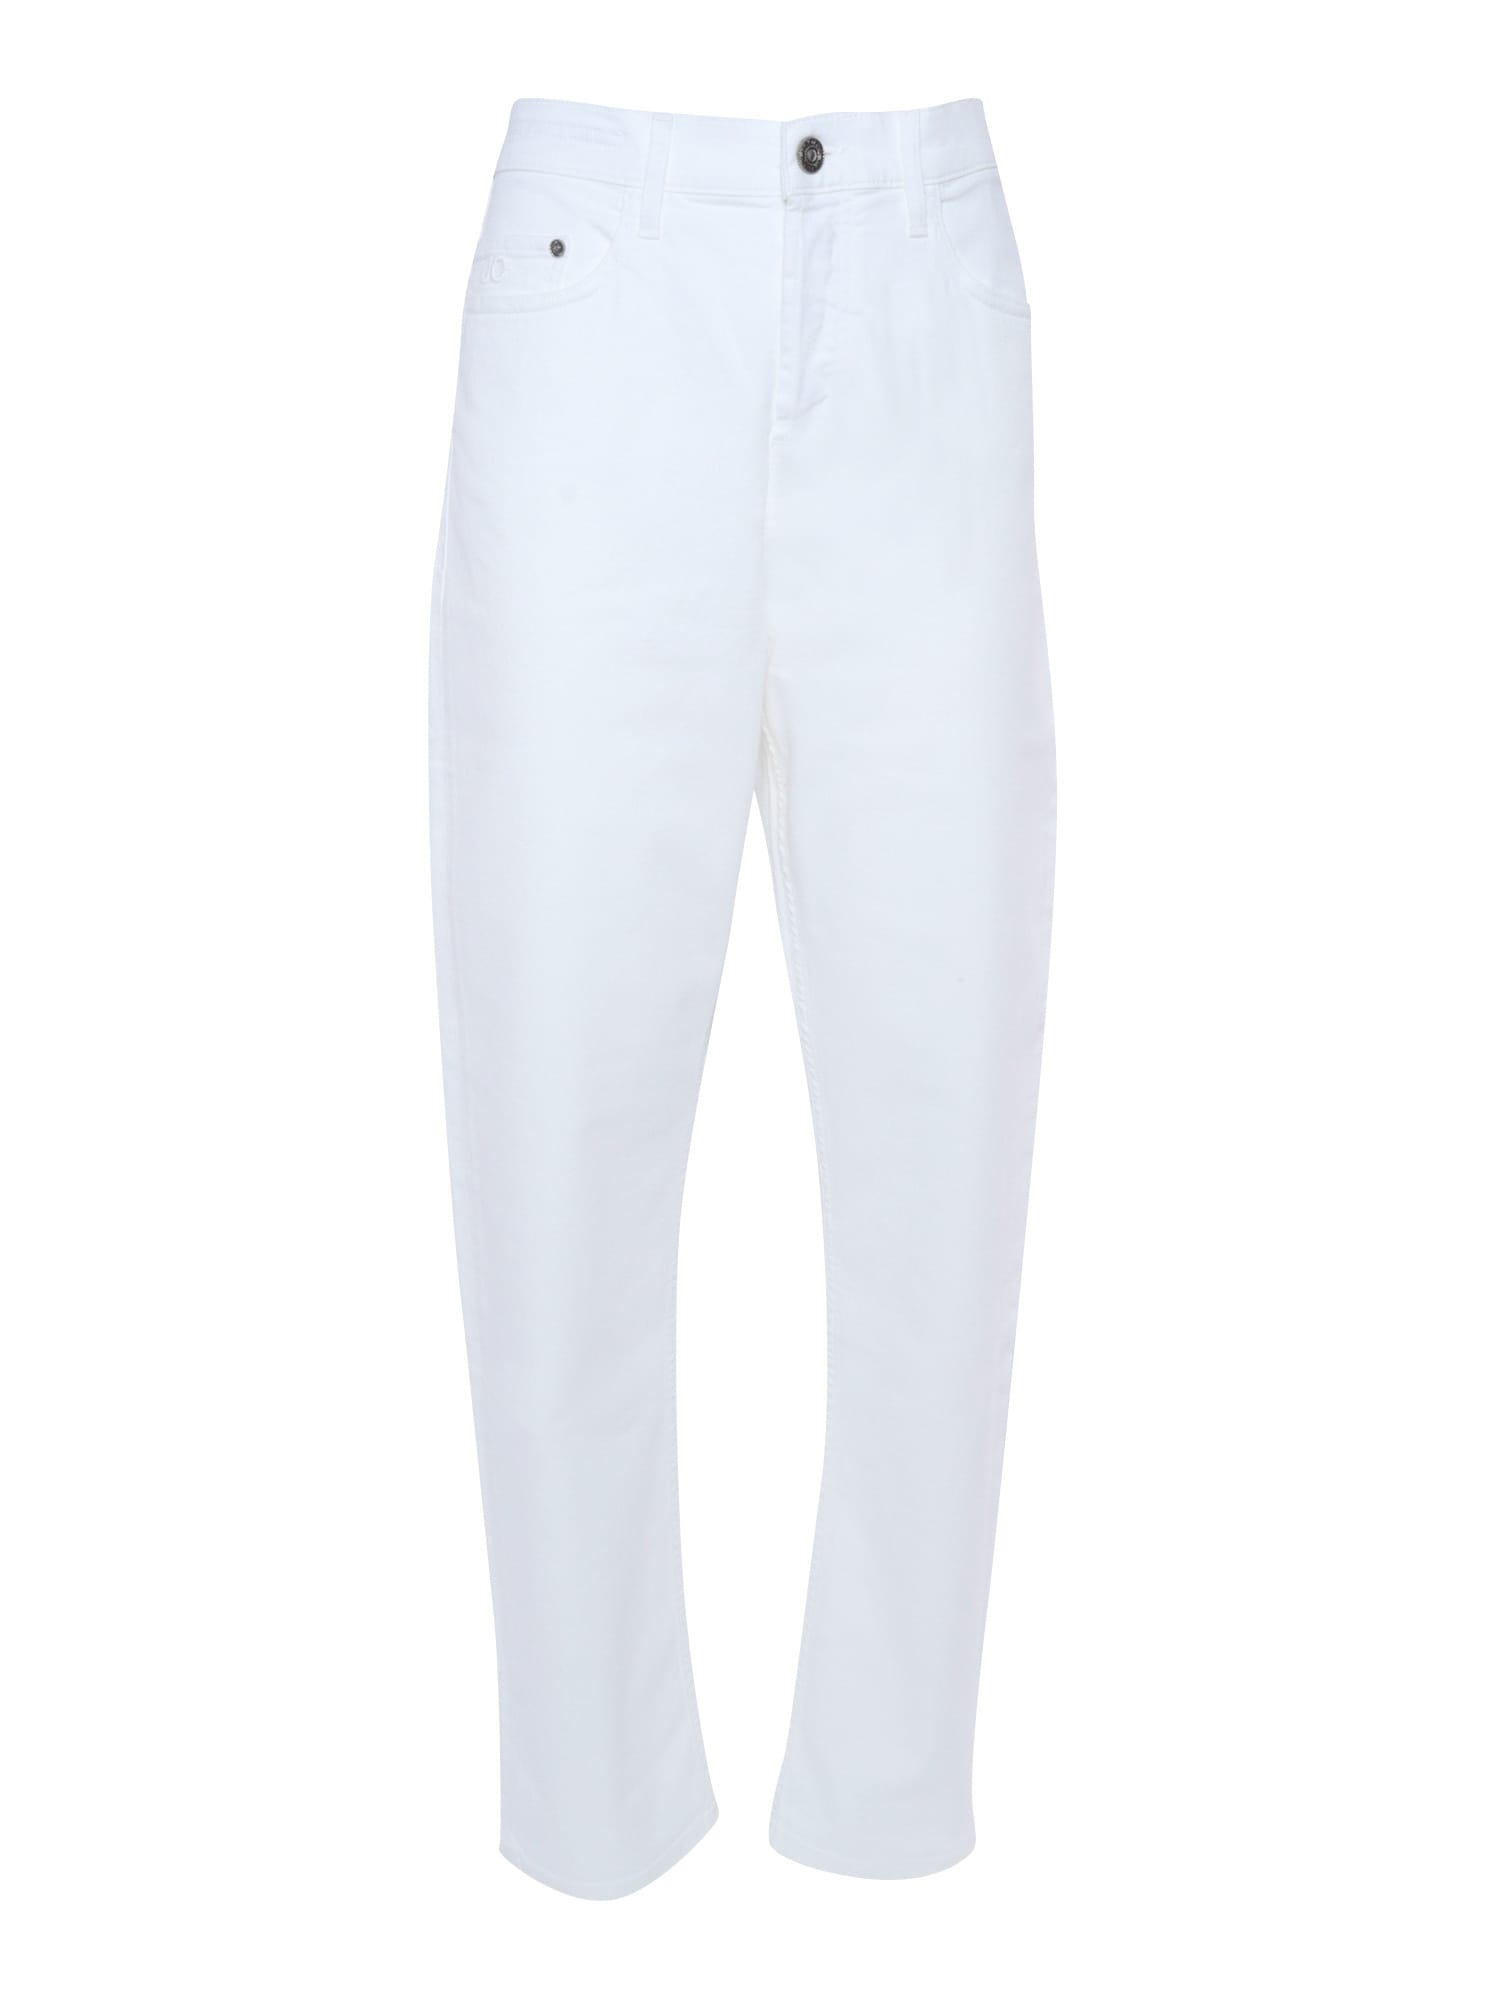 White 5 Pocket Jeans